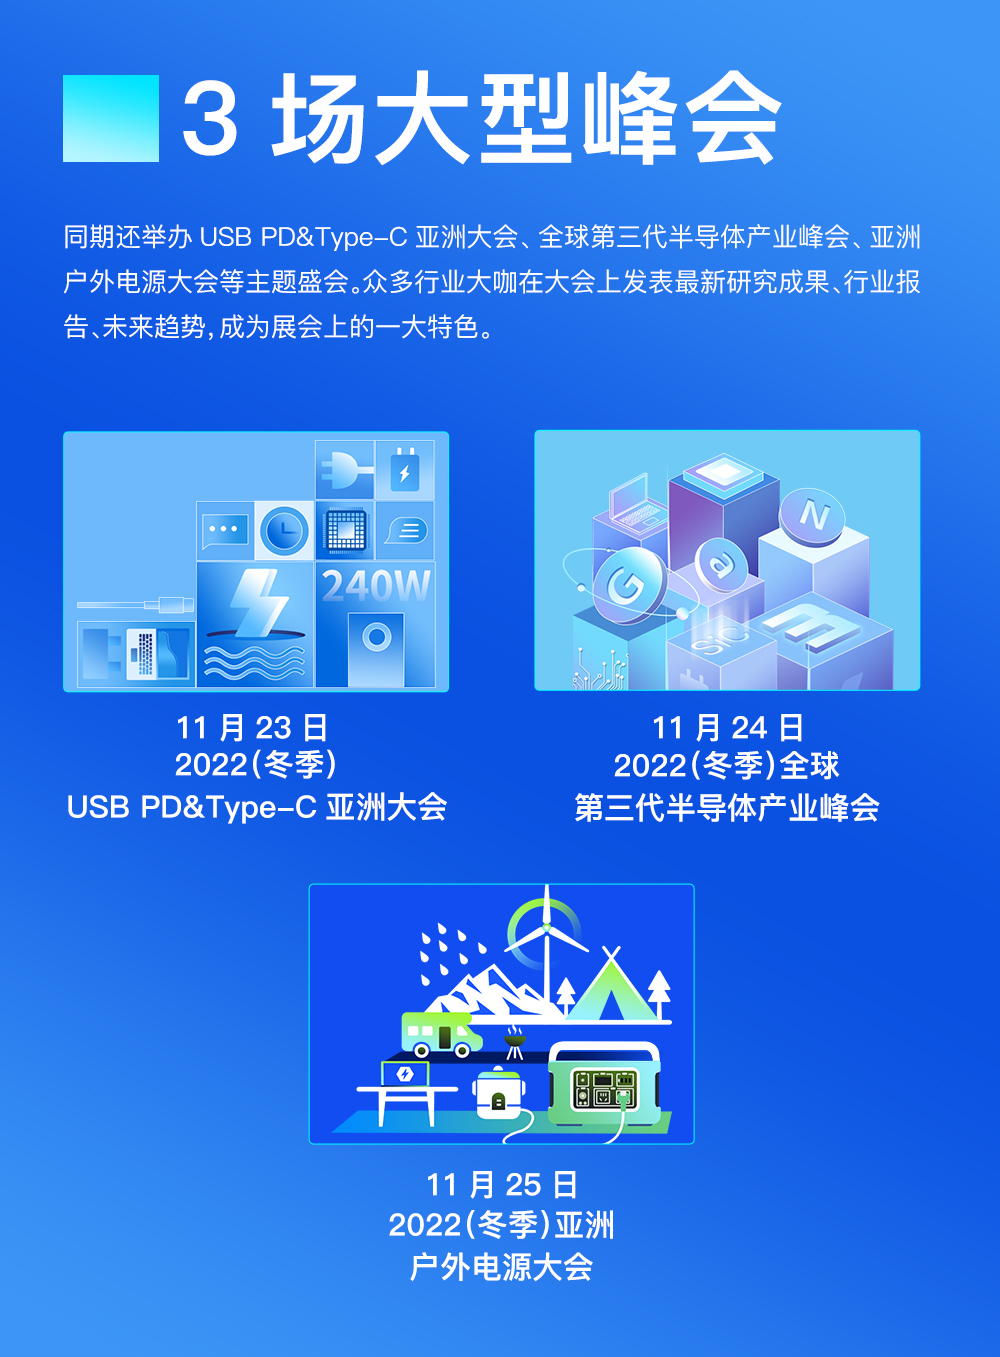 2022（冬季）亚洲充电展定档11月23日-25日-亚洲充电展